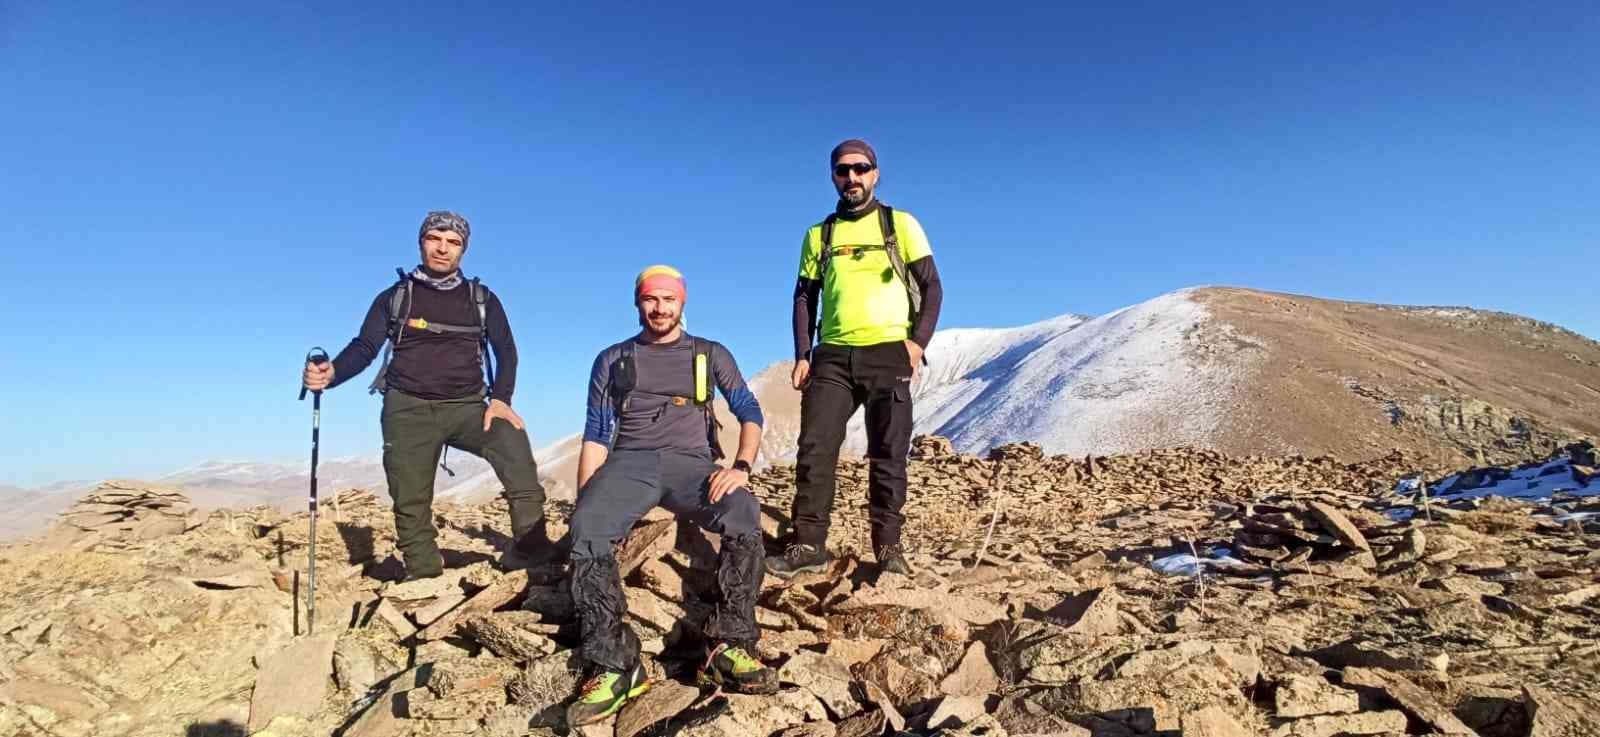 Türkiye’nin en soğuk ilçesindeki dağa kolsuz tişörtle çıktılar